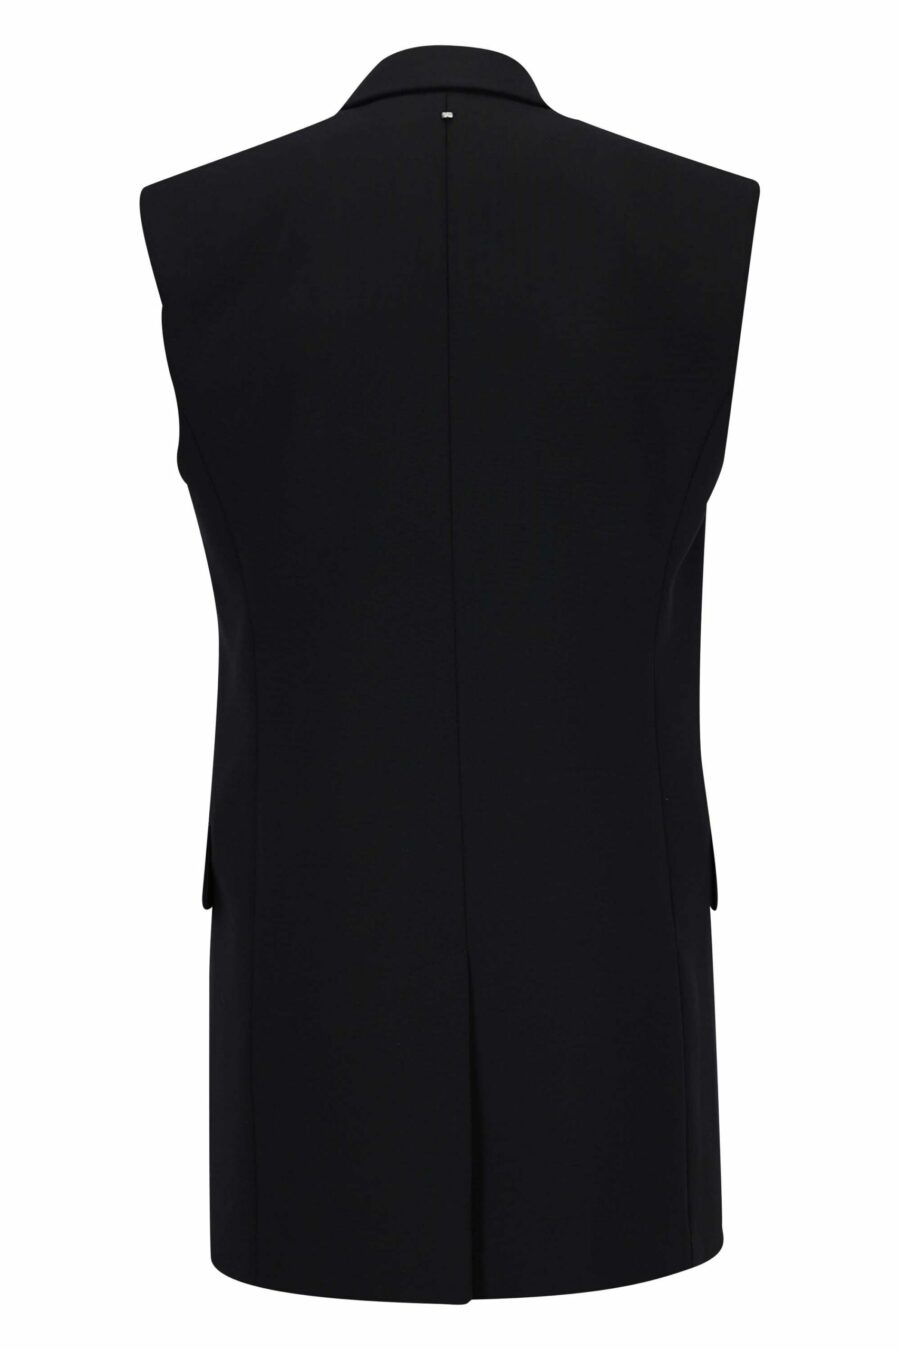 Black blazer style waistcoat - 22810141060034 2 scaled